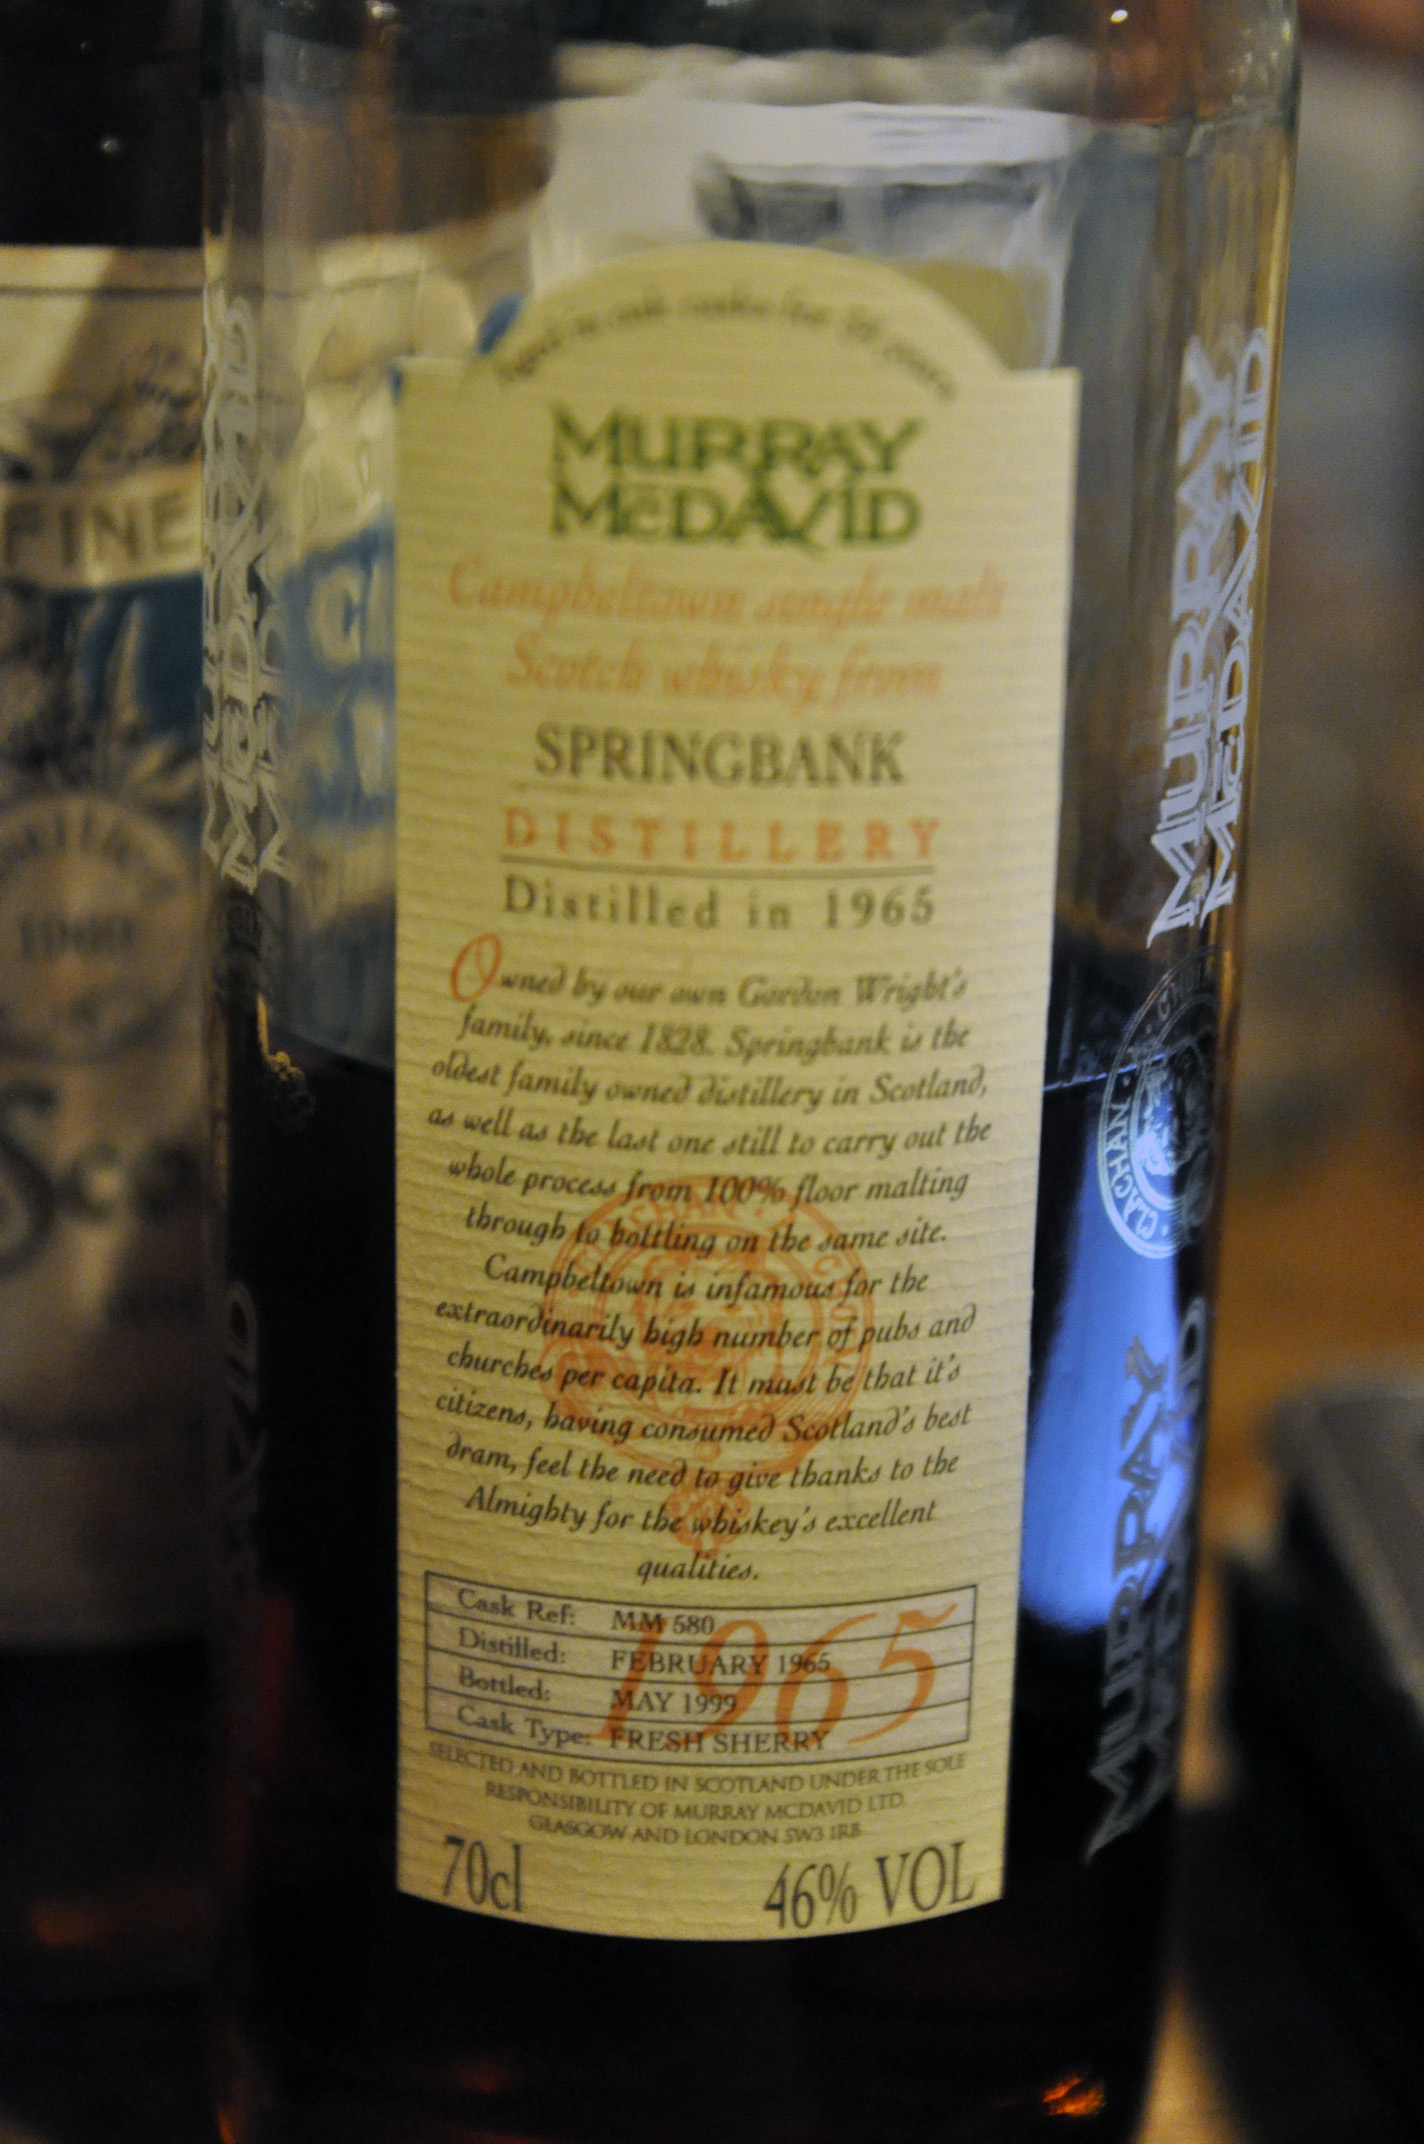 スプリングバンク　Springbank 34yo 1965/1999 (46.0%, Murray McDavid, cask ref MM580. cask type  fresh sherry, 204bts)